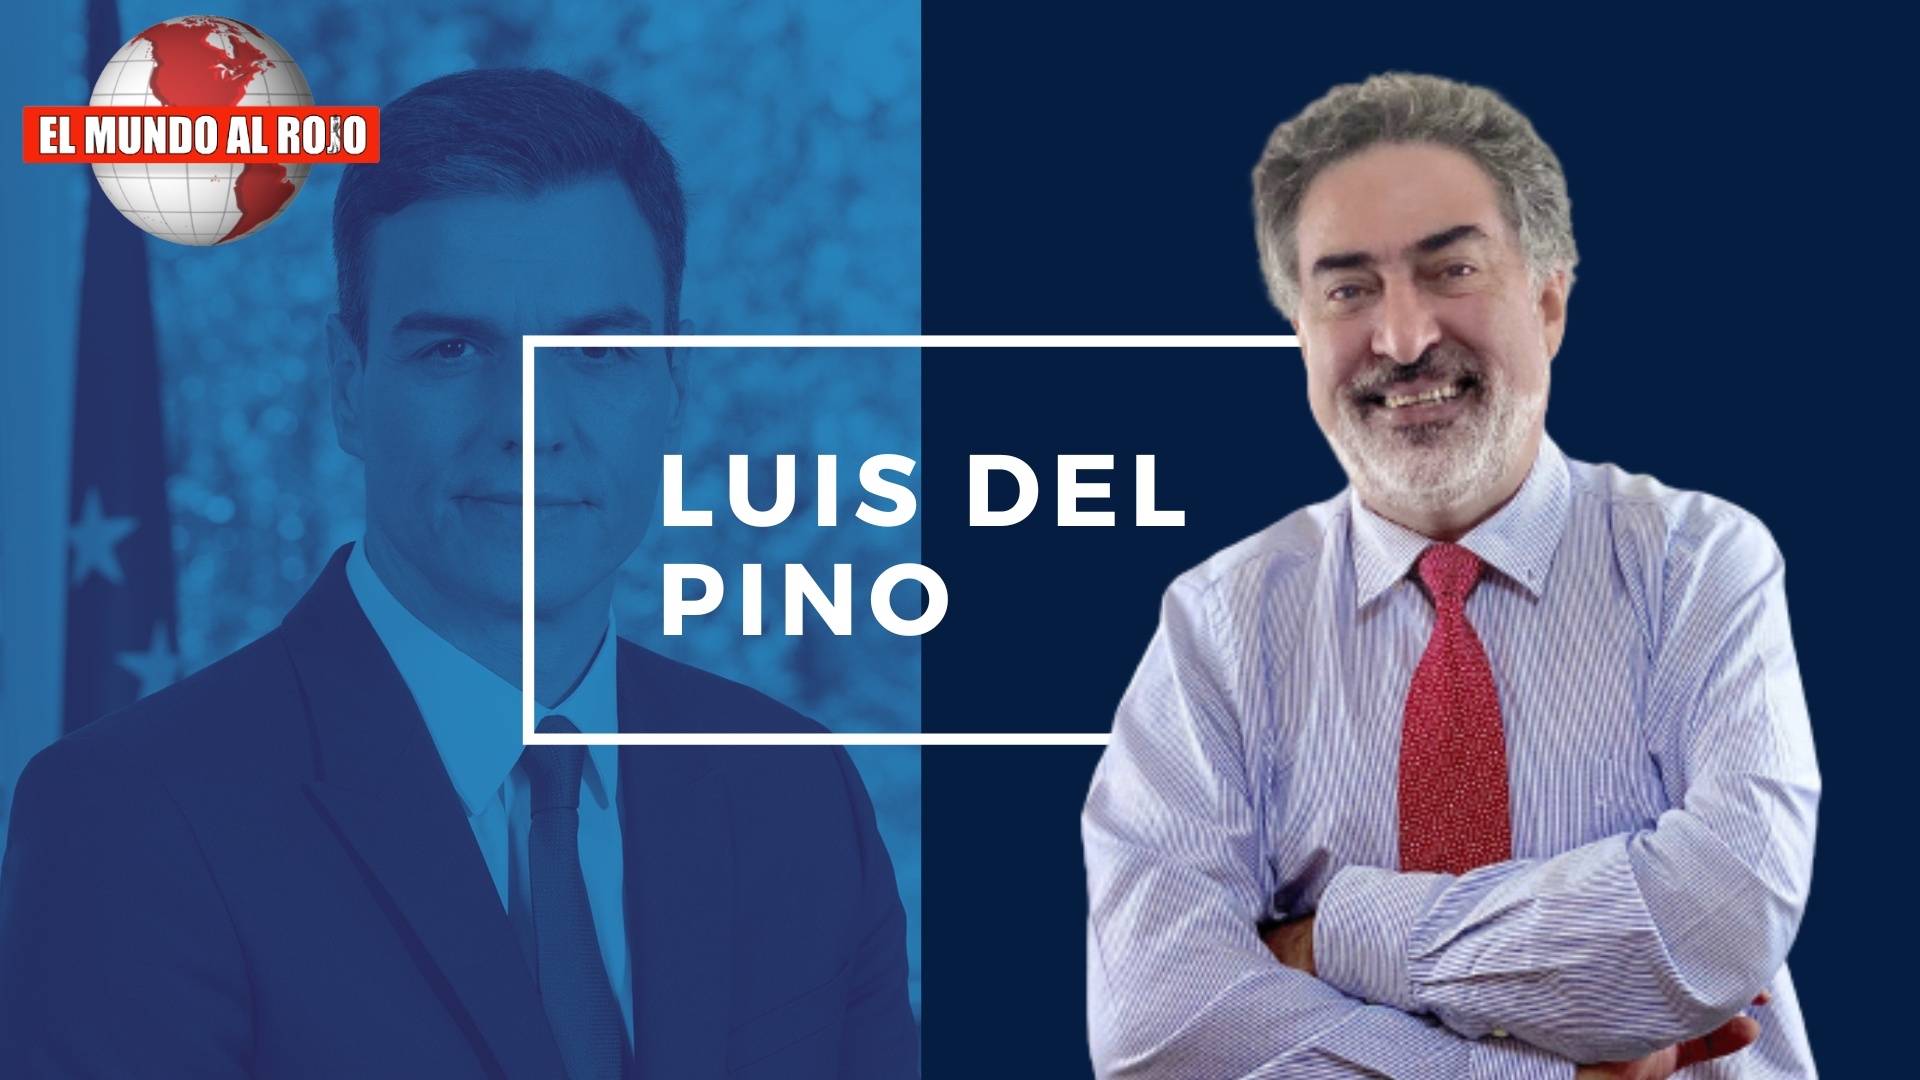 Luis del Pino